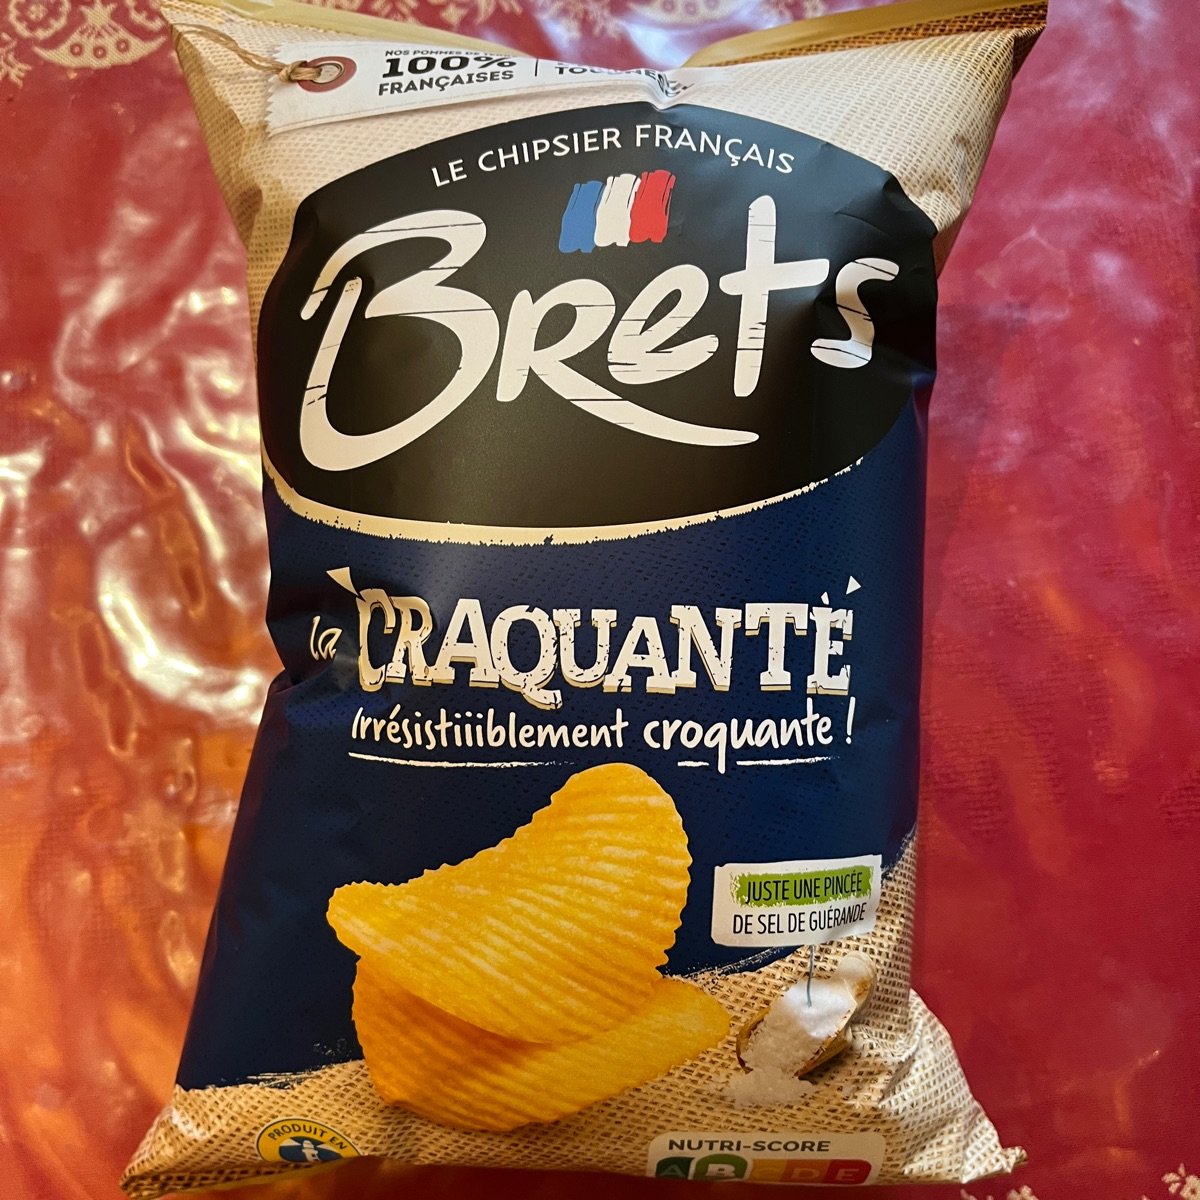 Brets (Le Chipsier Français) Truffe d'ete Review